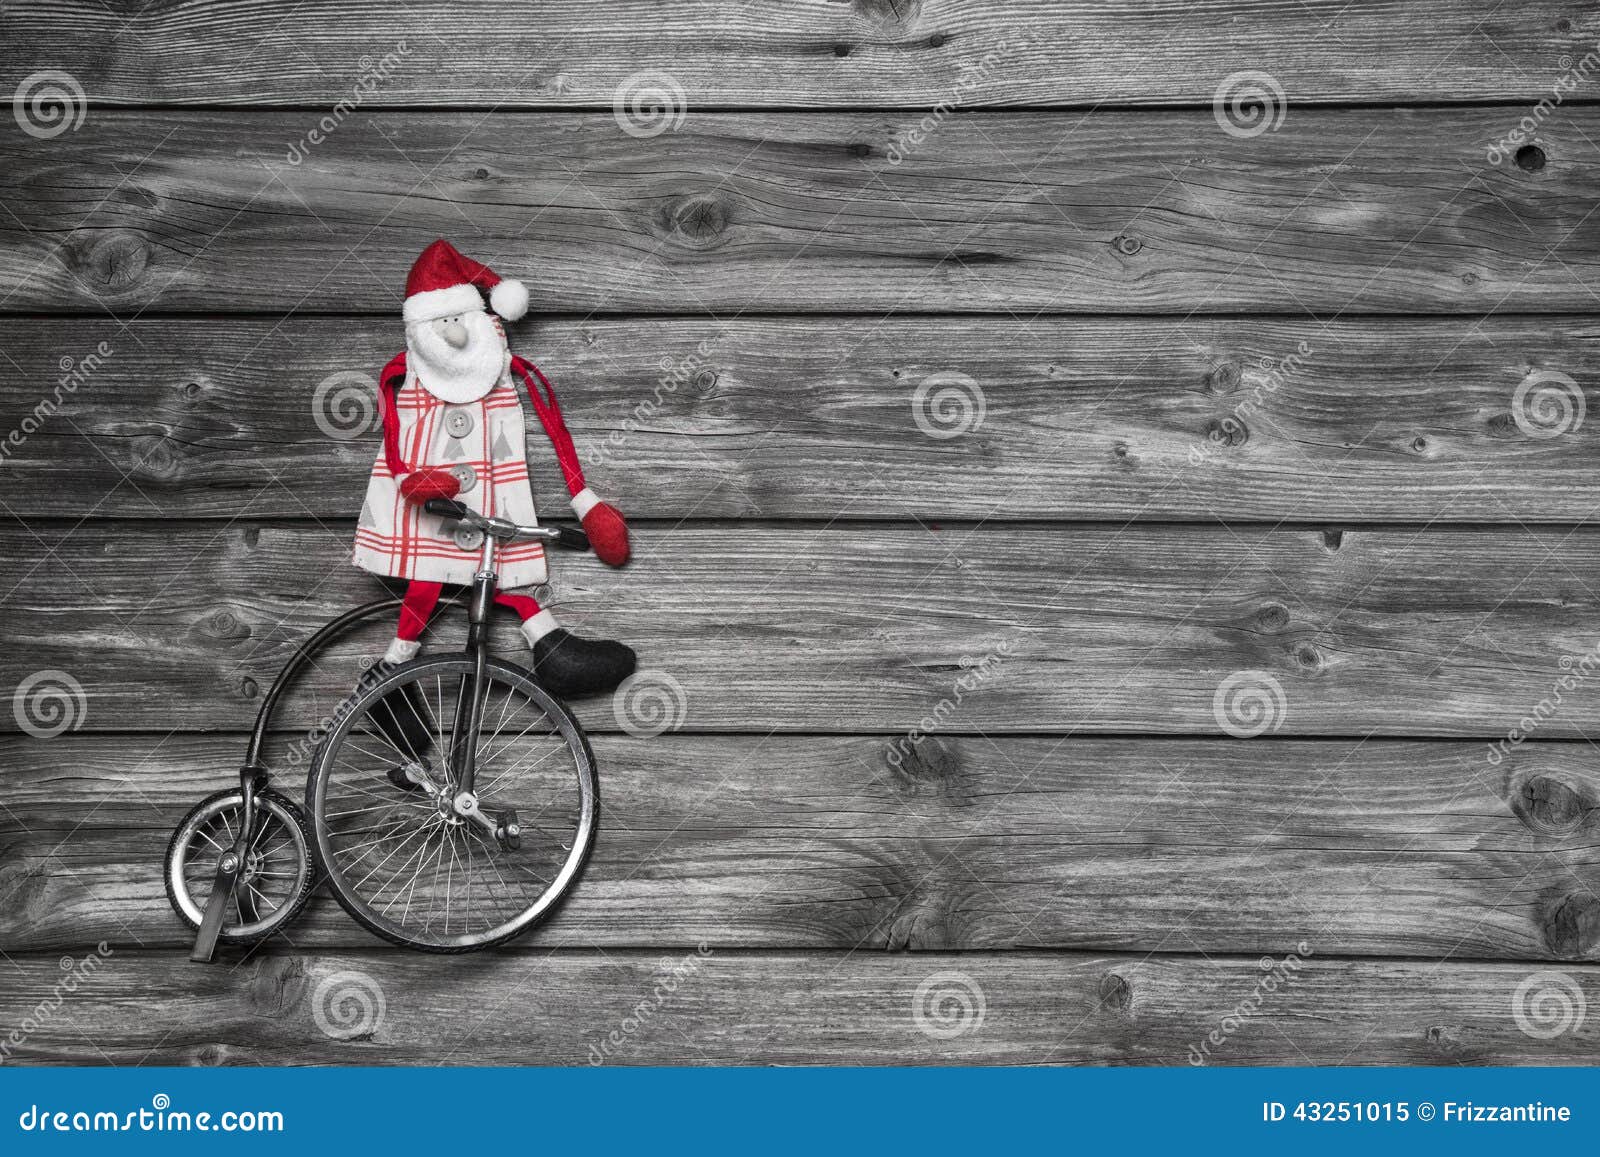 Weihnachtsmann Auf Fahrrad Fotos Kostenlose Und Royalty Free Stock Fotos Von Dreamstime